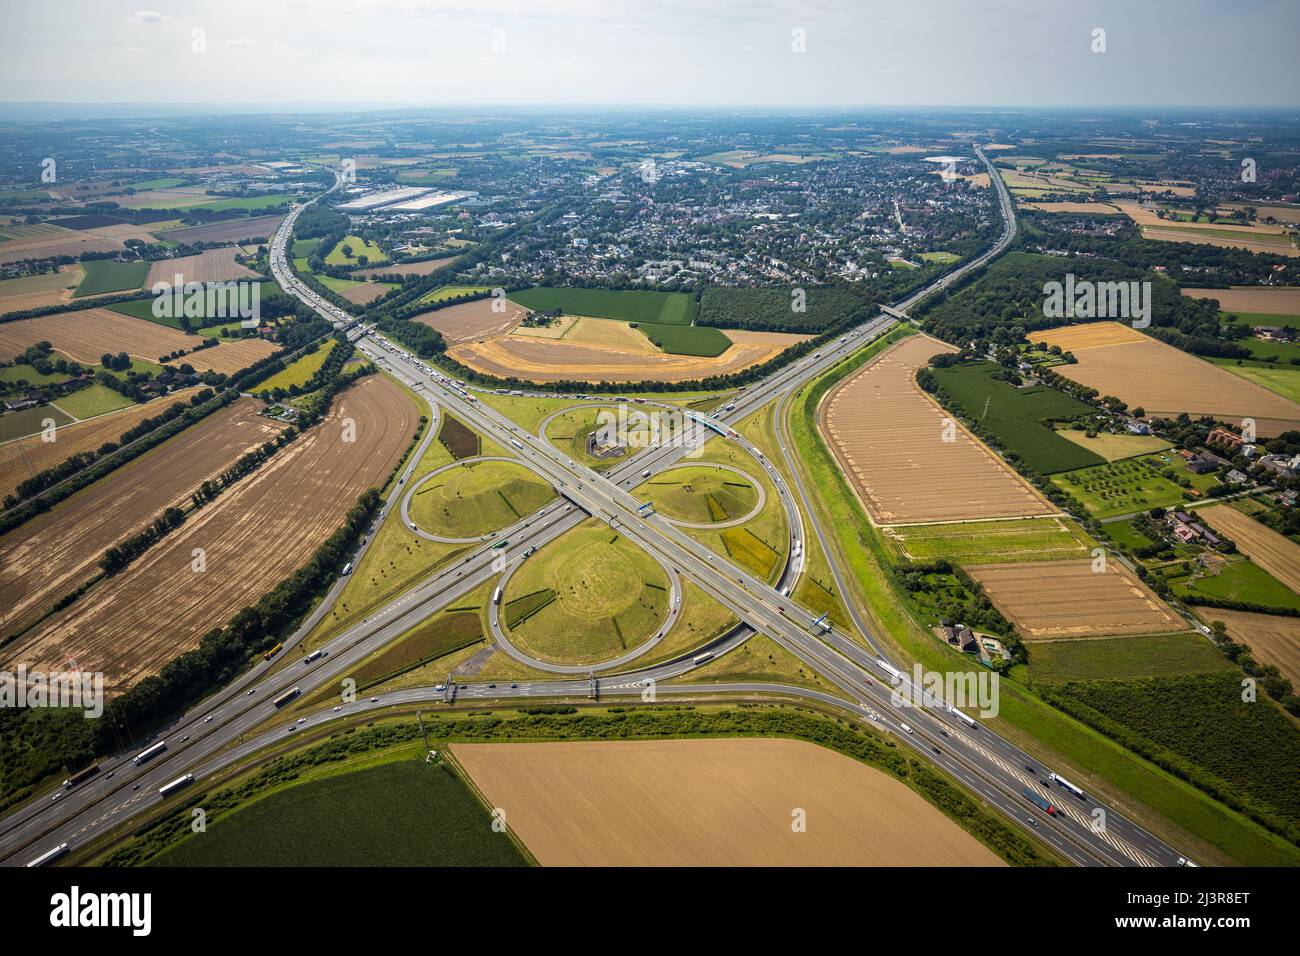 Vue aérienne, Kamener Kreuz avec les autoroutes A1 et A2, sculpture en hélicoptère Yellow Angel dans le cercle intérieur, Kamen, région de Ruhr, Rhénanie-du-Nord-Westphalie Banque D'Images